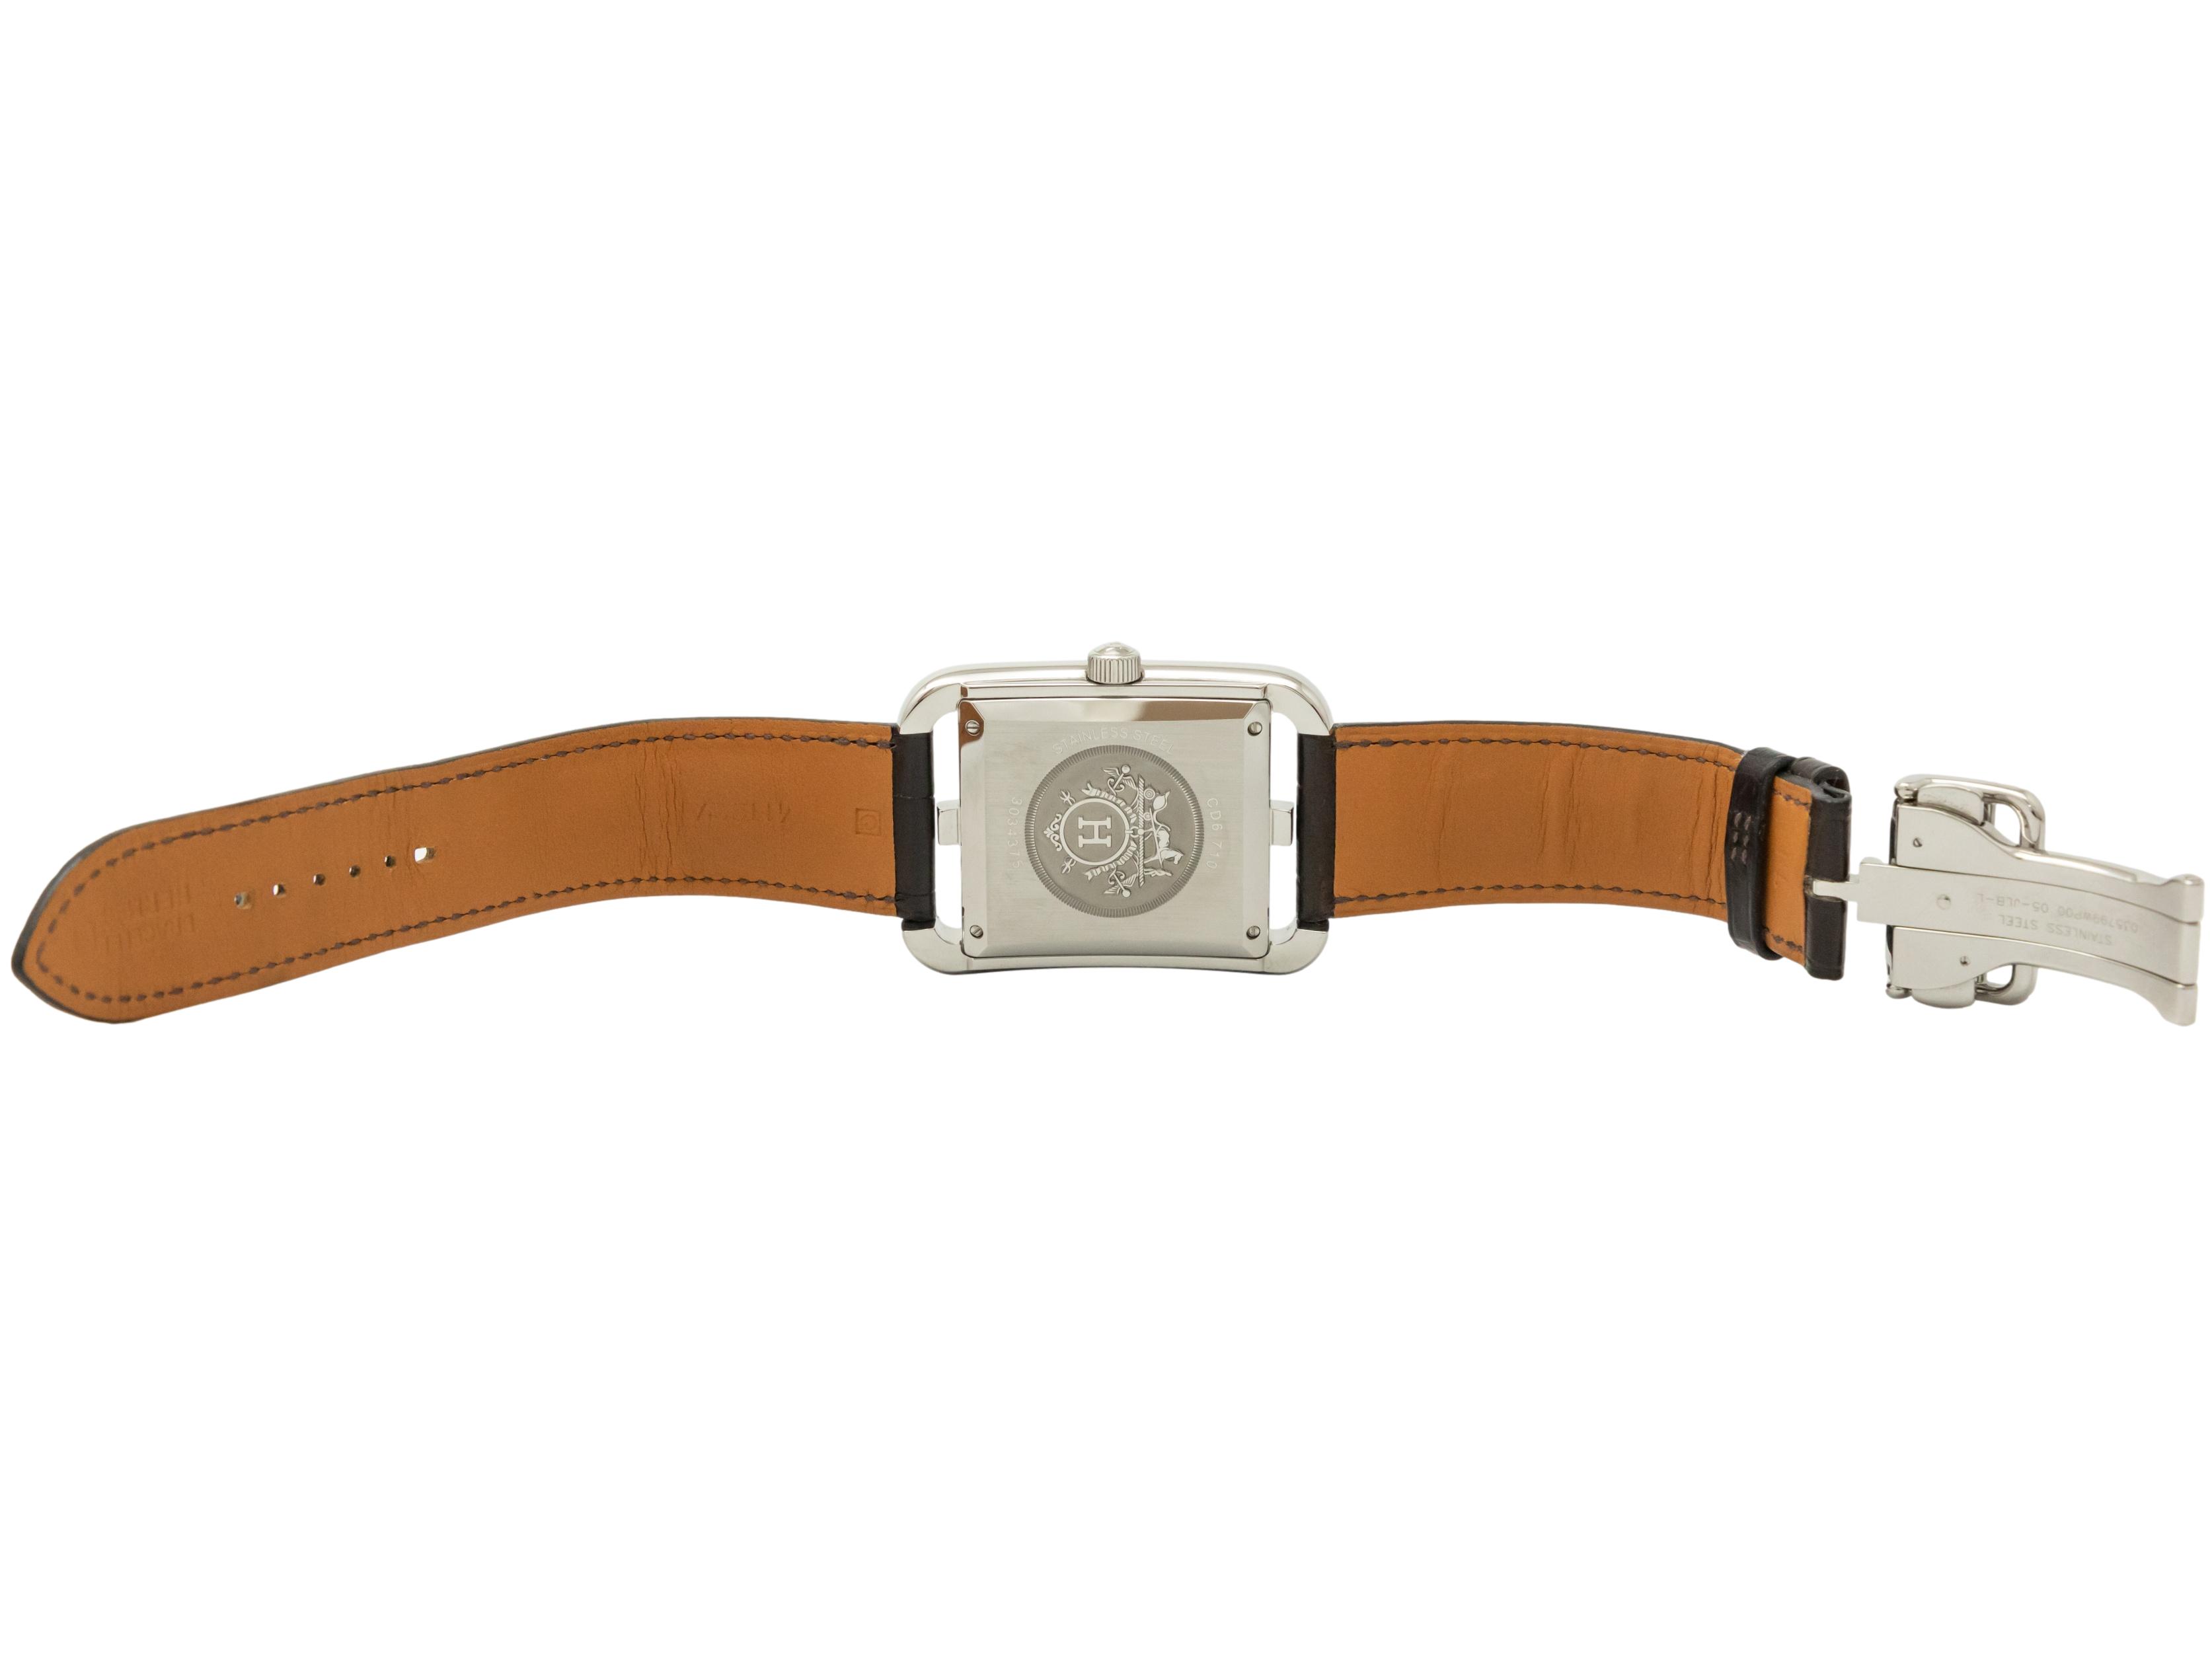 エルメス ケープコッド メンズ 腕時計 HERMES CD6.710 自動巻き シルバー文字盤